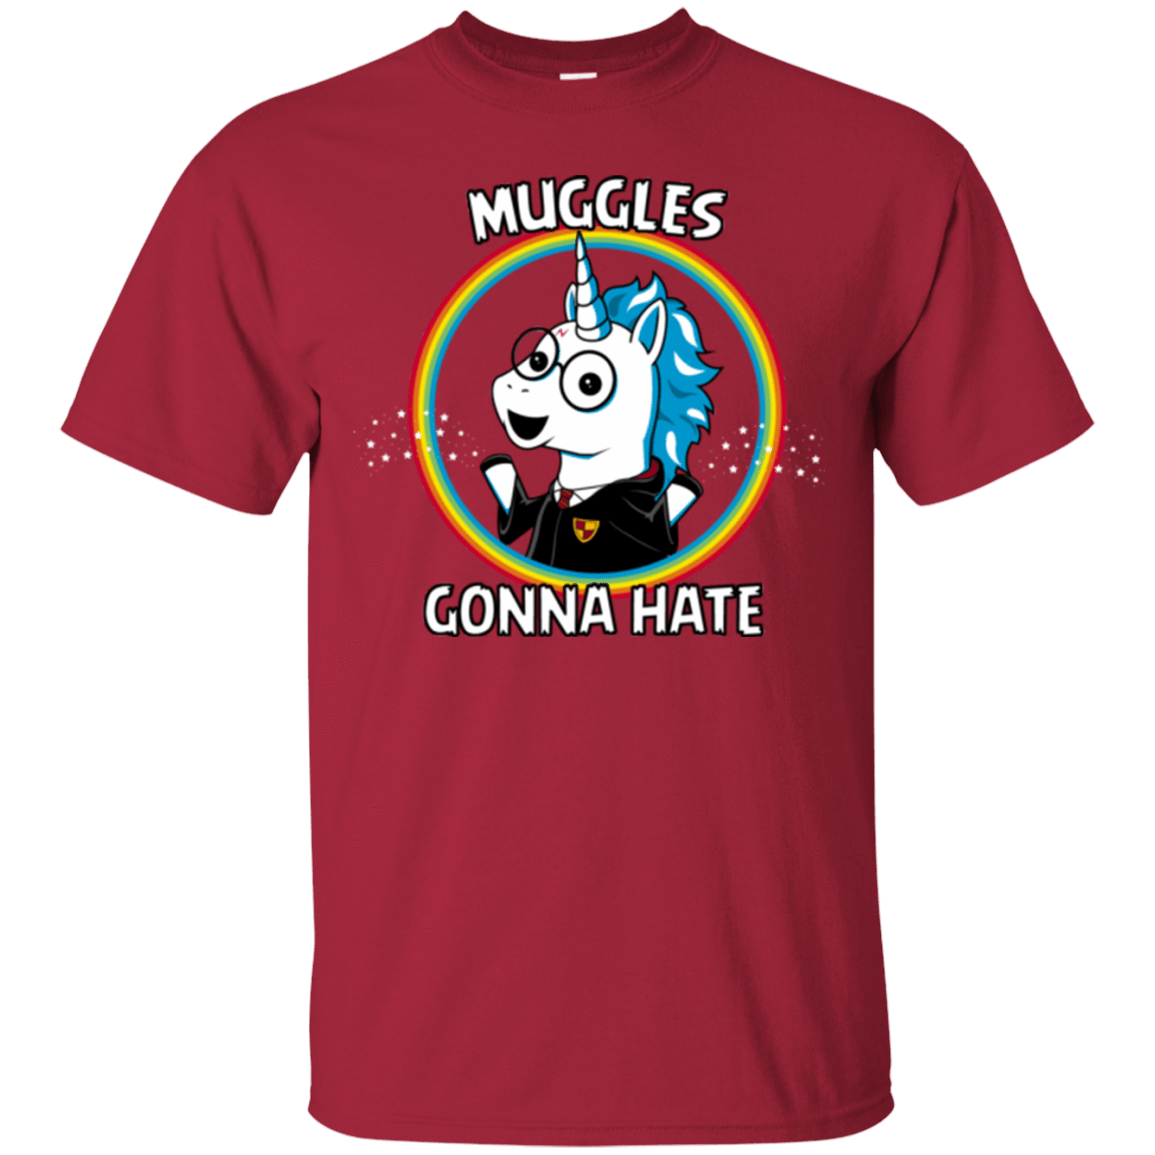 T-Shirts Cardinal / Small Muggles Gonna Hate T-Shirt